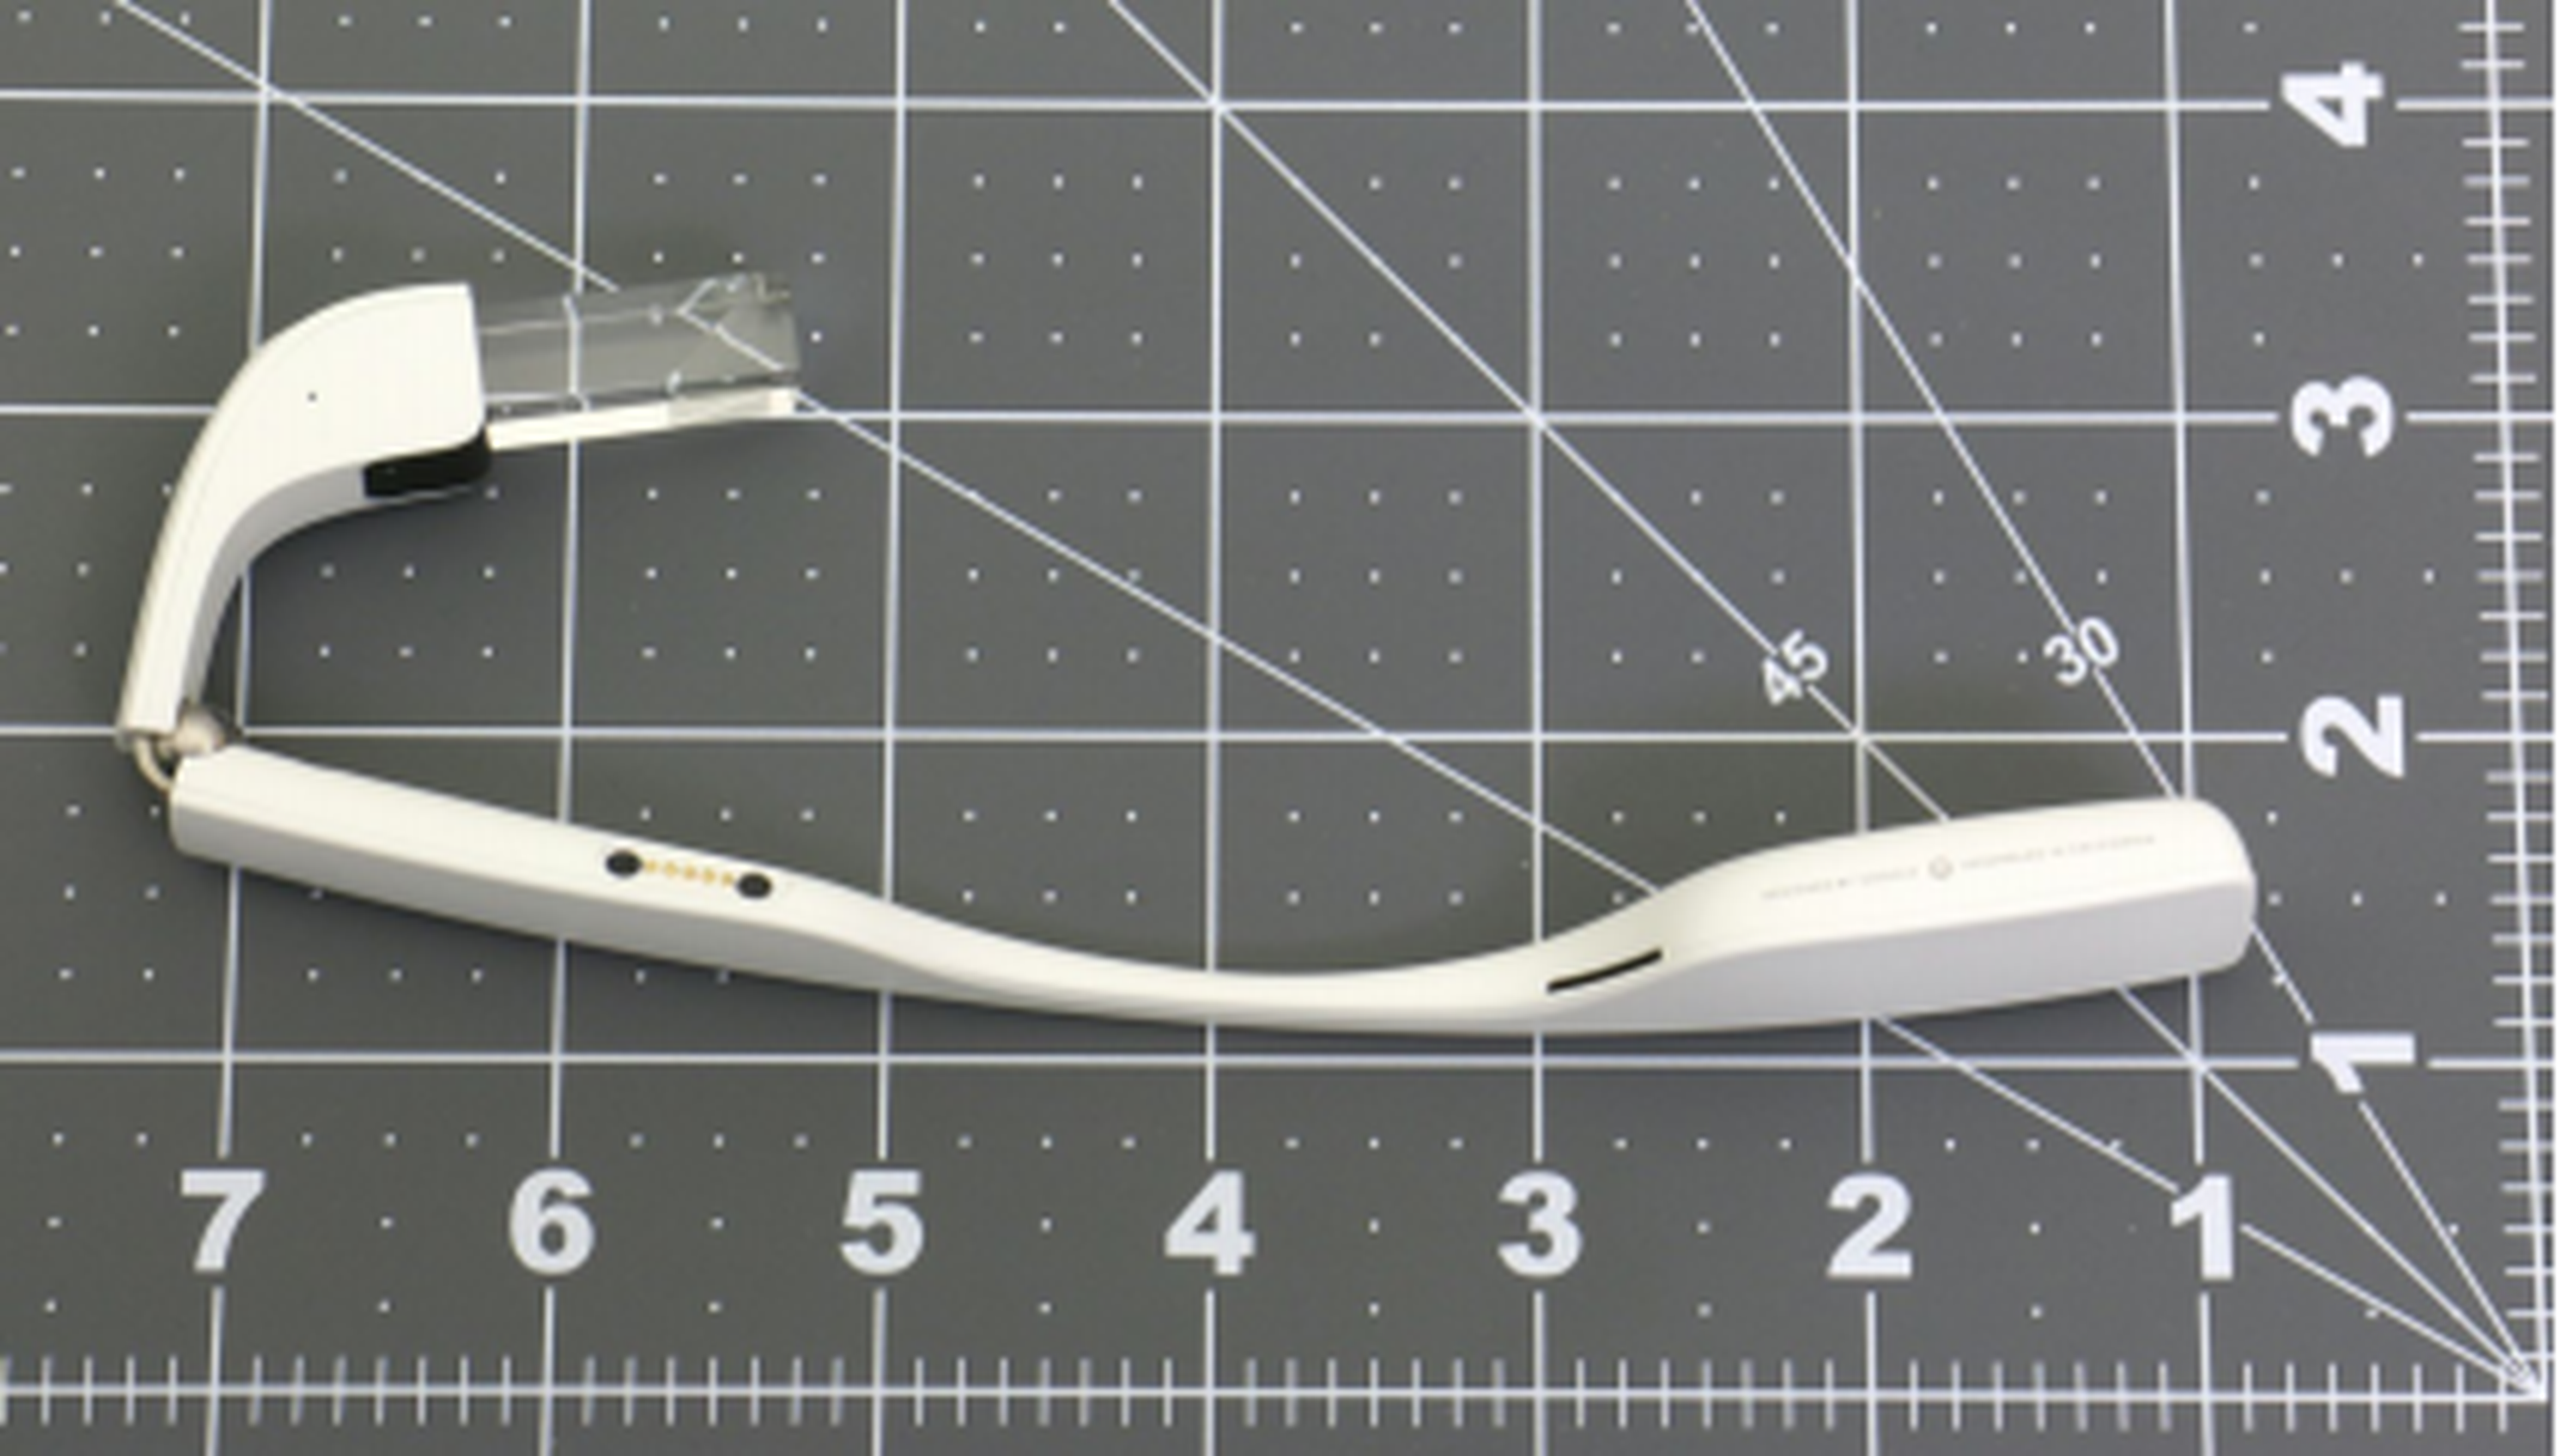 Se filtran imágenes posible nuevo modelo Google Glass